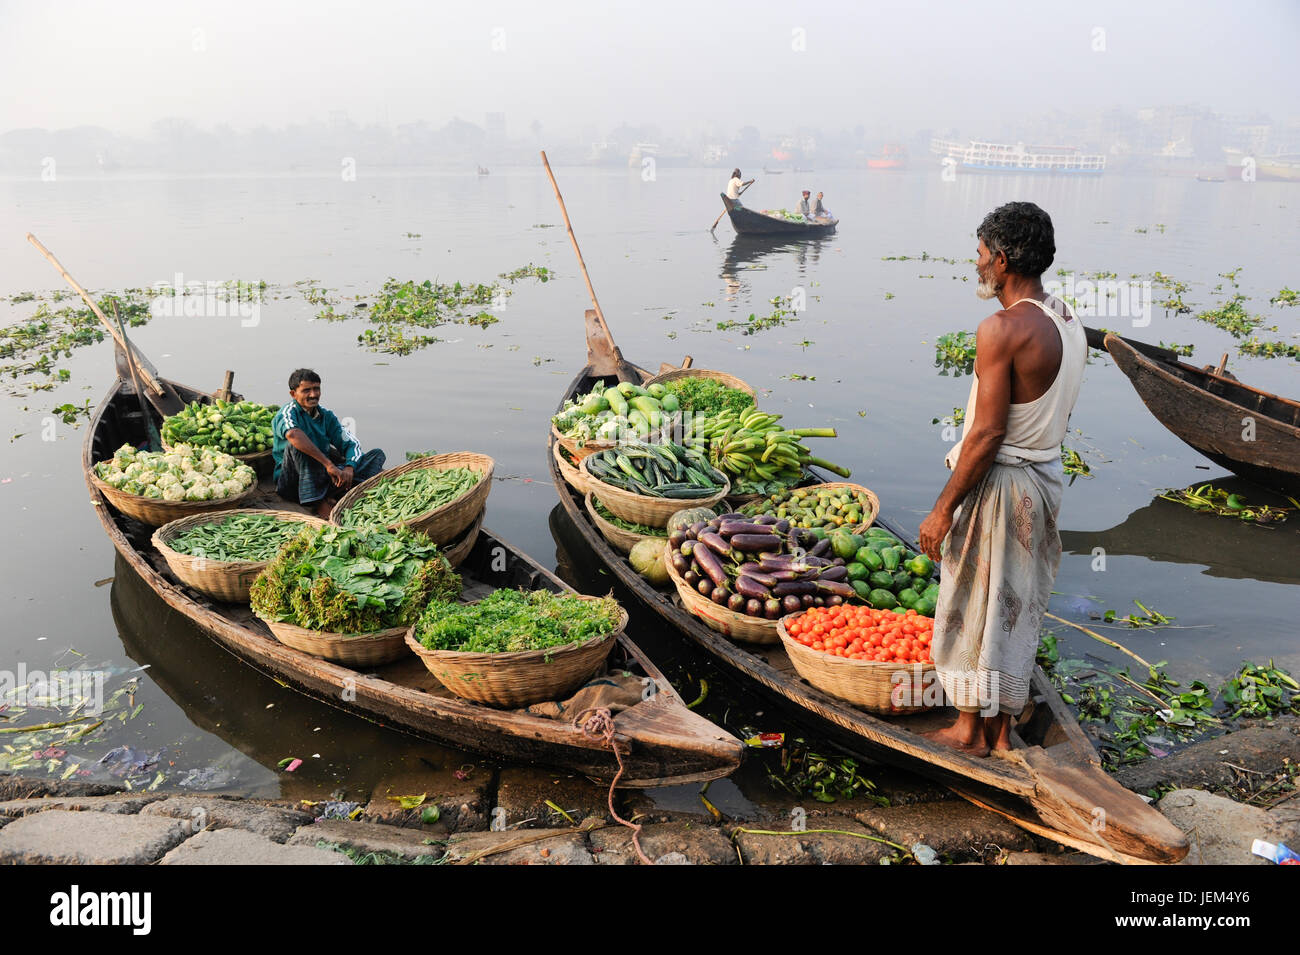 Bangladesch Dhaka, buriganga Fluss, Boote Transport frisches Gemüse aus dem Dorf in die Stadt/BANGLADESCH Dhaka, Boote auf dem Fluss Buriganga transportieren Gemuese Stockfoto